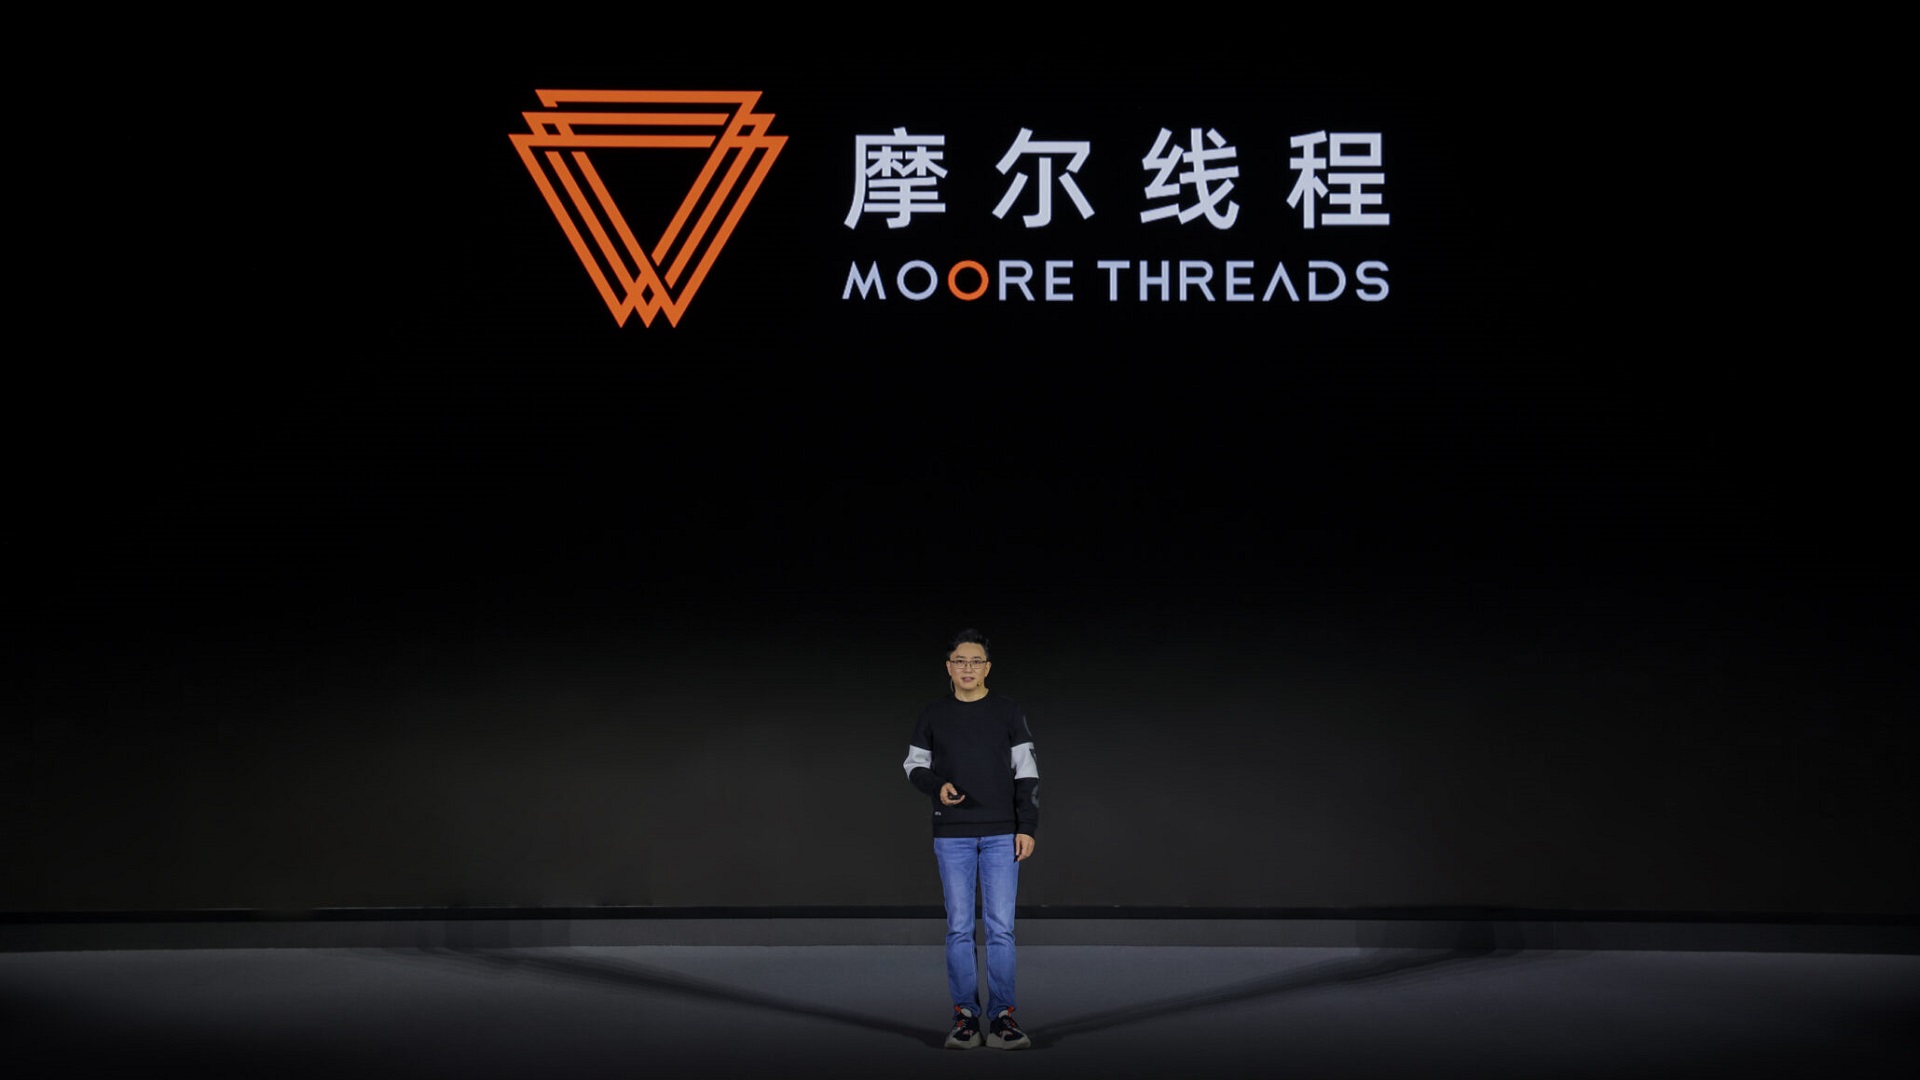 رونمایی از GPU چینی Moore Threads با قابلیت پشتیبانی از DirectX 